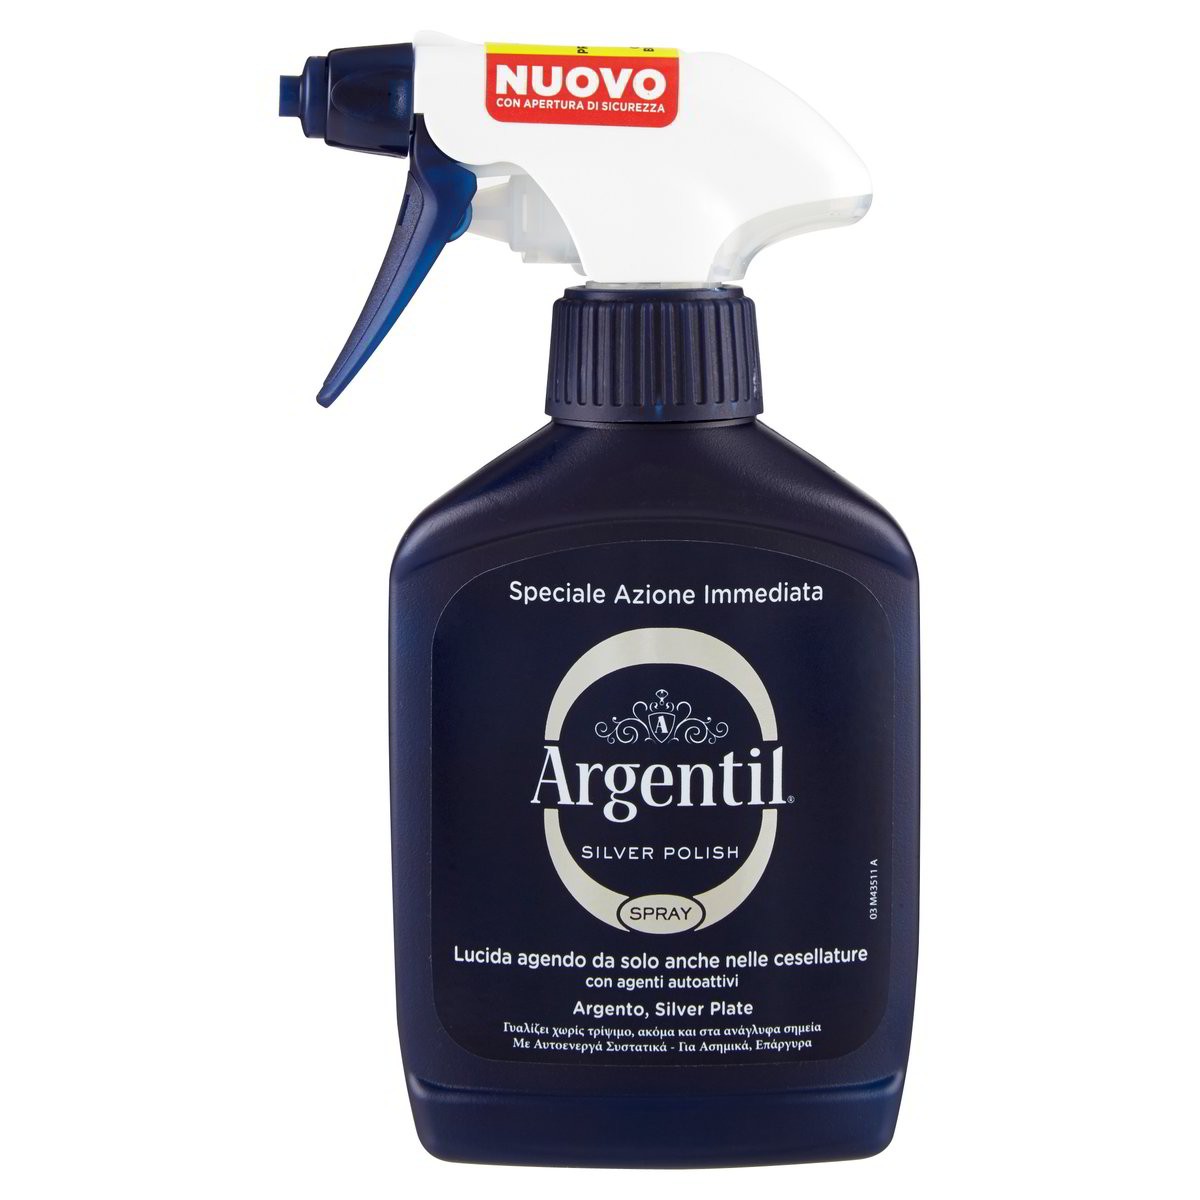 Argentil Detergente spray lucidante per Argento